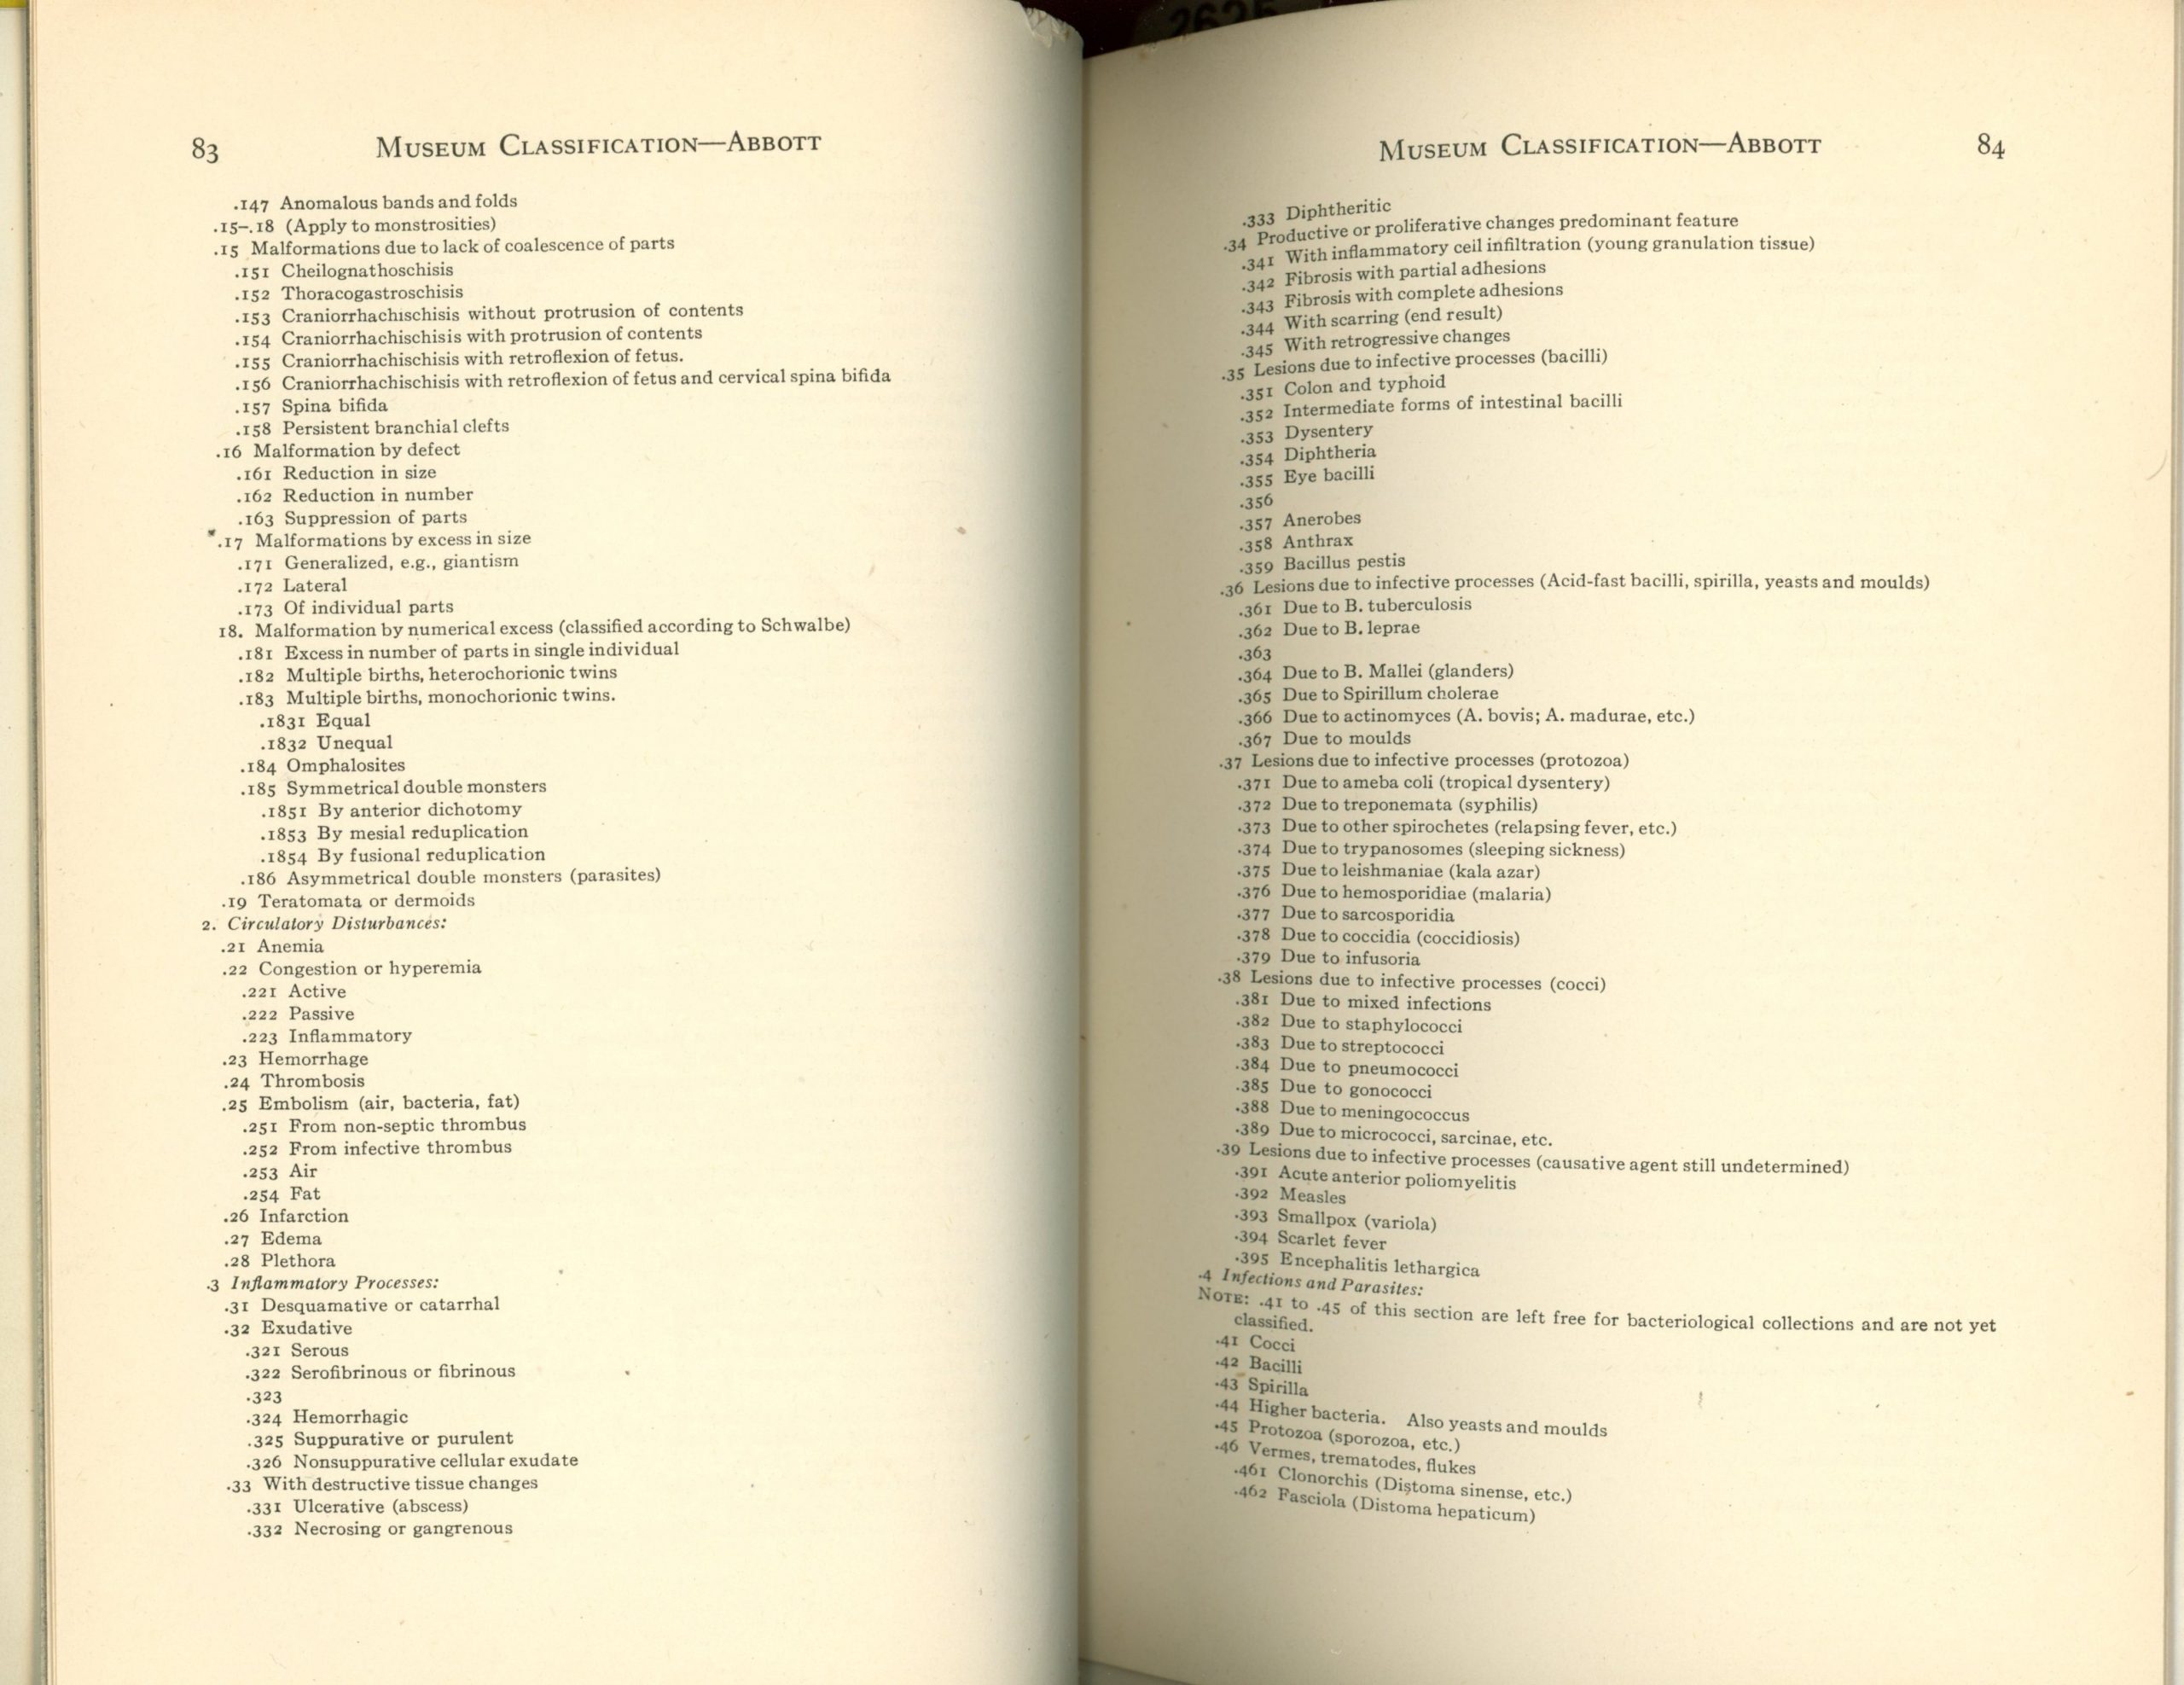 Pages 83 et 84 du guide de classification muséale de Maude Abbott, encre noire sur papier sépia. En haut de chaque page, le titre « Museum Classification – Abbott », puis sur chaque page une liste de conditions médicales. 